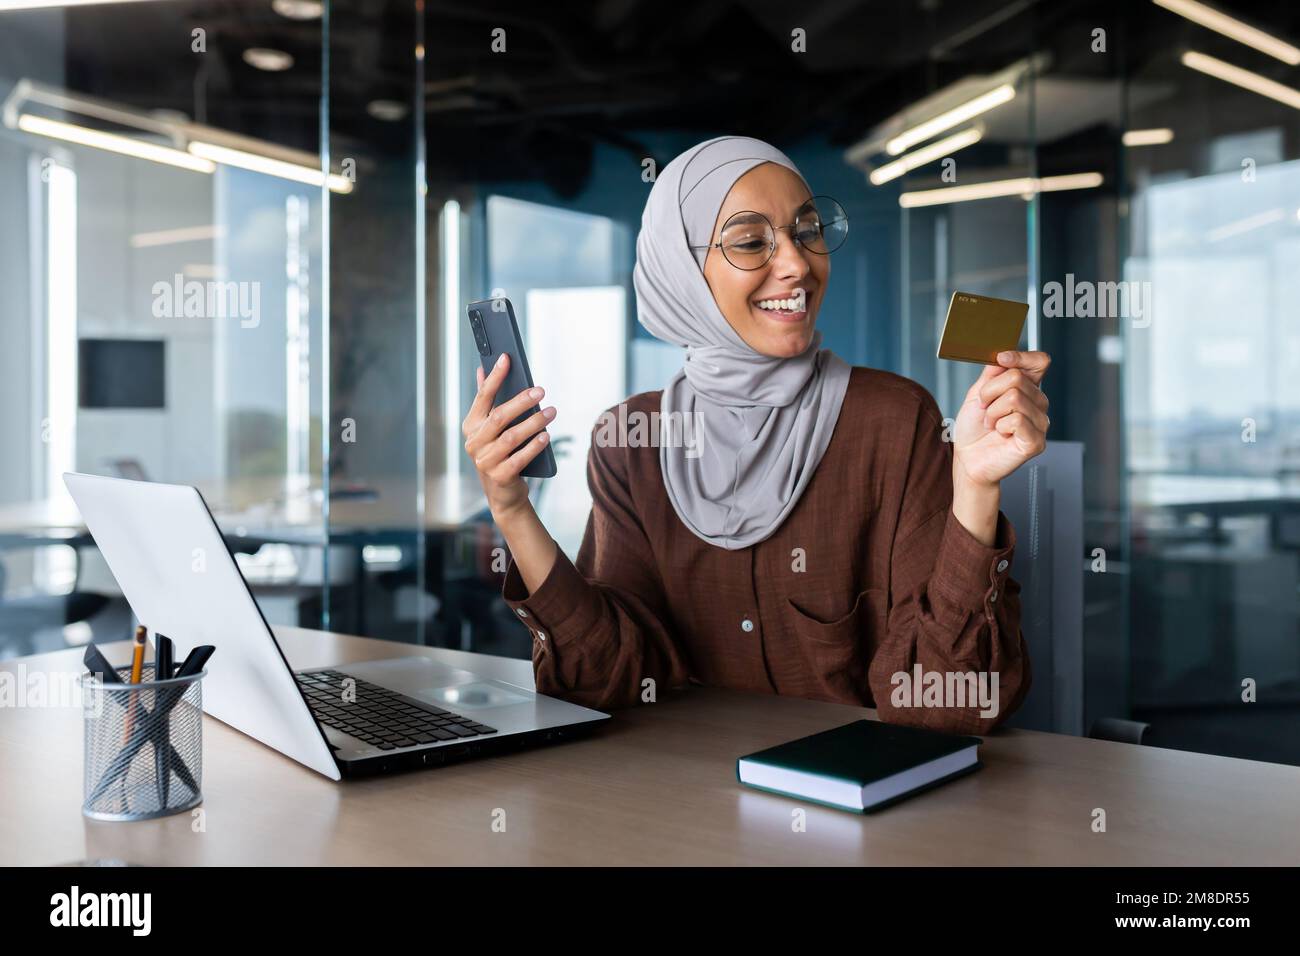 Hermosa Mujer Musulmana Con Ropa Formal Y Hiyab Haciendo Compras En Línea  Con Tarjeta De Crédito Y Teléfono Inteligente. Joven Parada Cerca Del  Edificio De Oficinas Y Disfrutando De Un Pago Fácil.